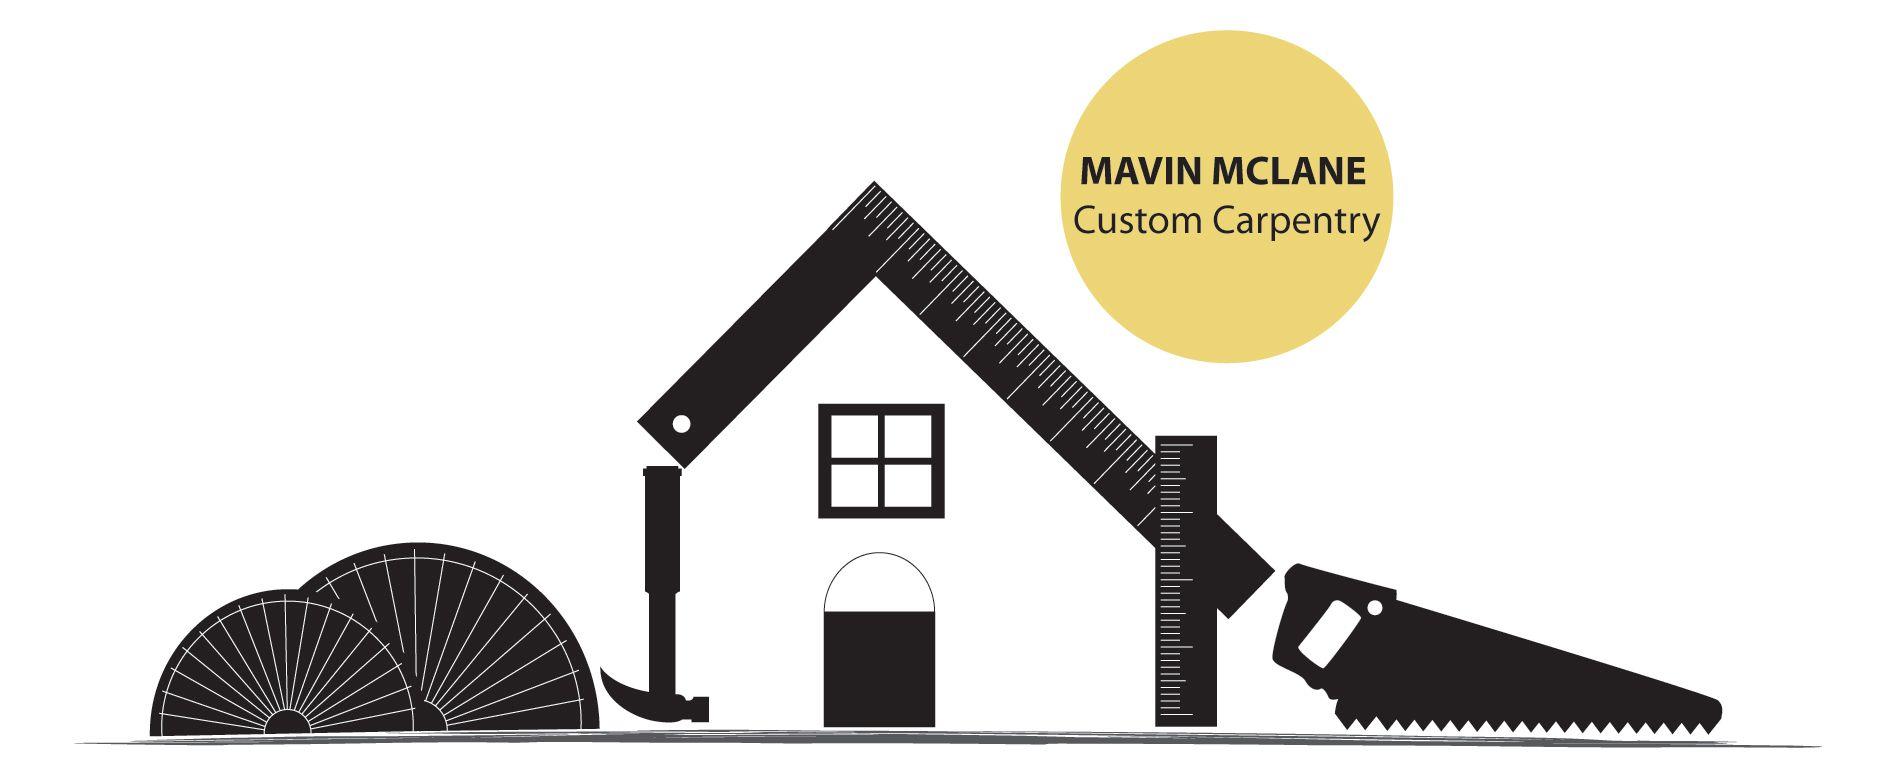 Carpentry Company Logo - Carpentry Logo Design for Mavin McLane Custom Carpentry